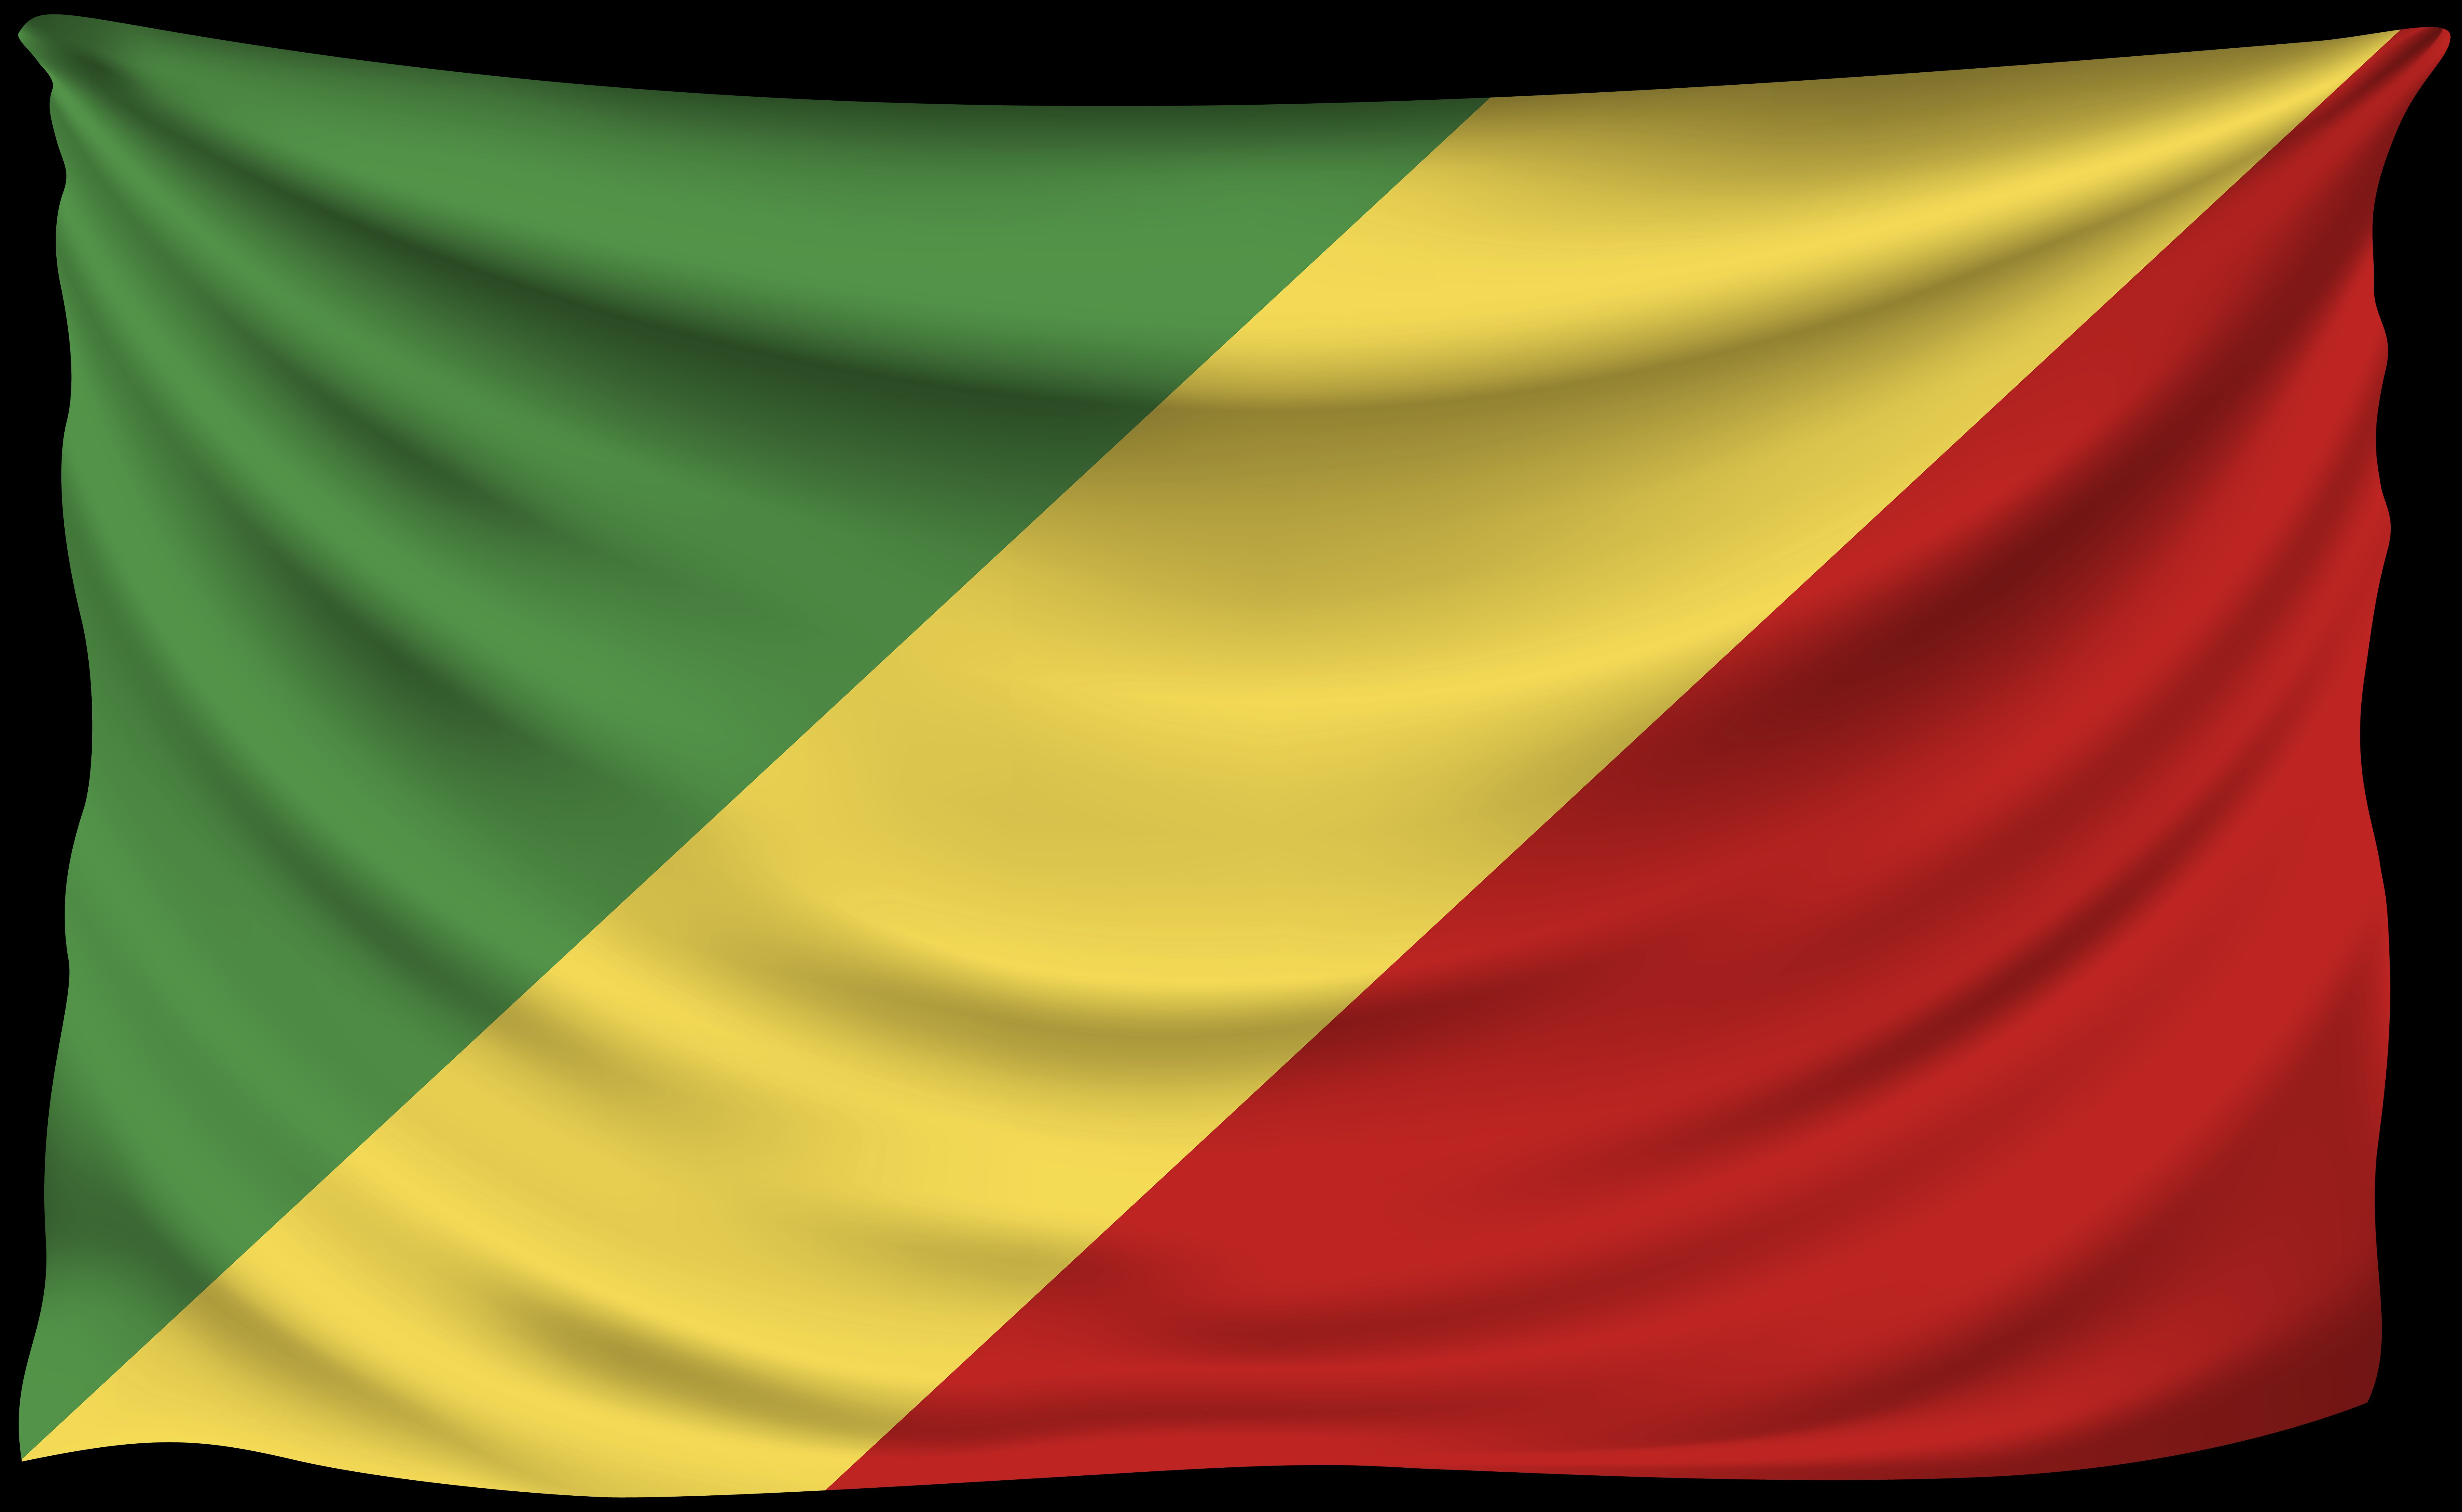 Скачать обои Флаг Республики Конго на телефон бесплатно